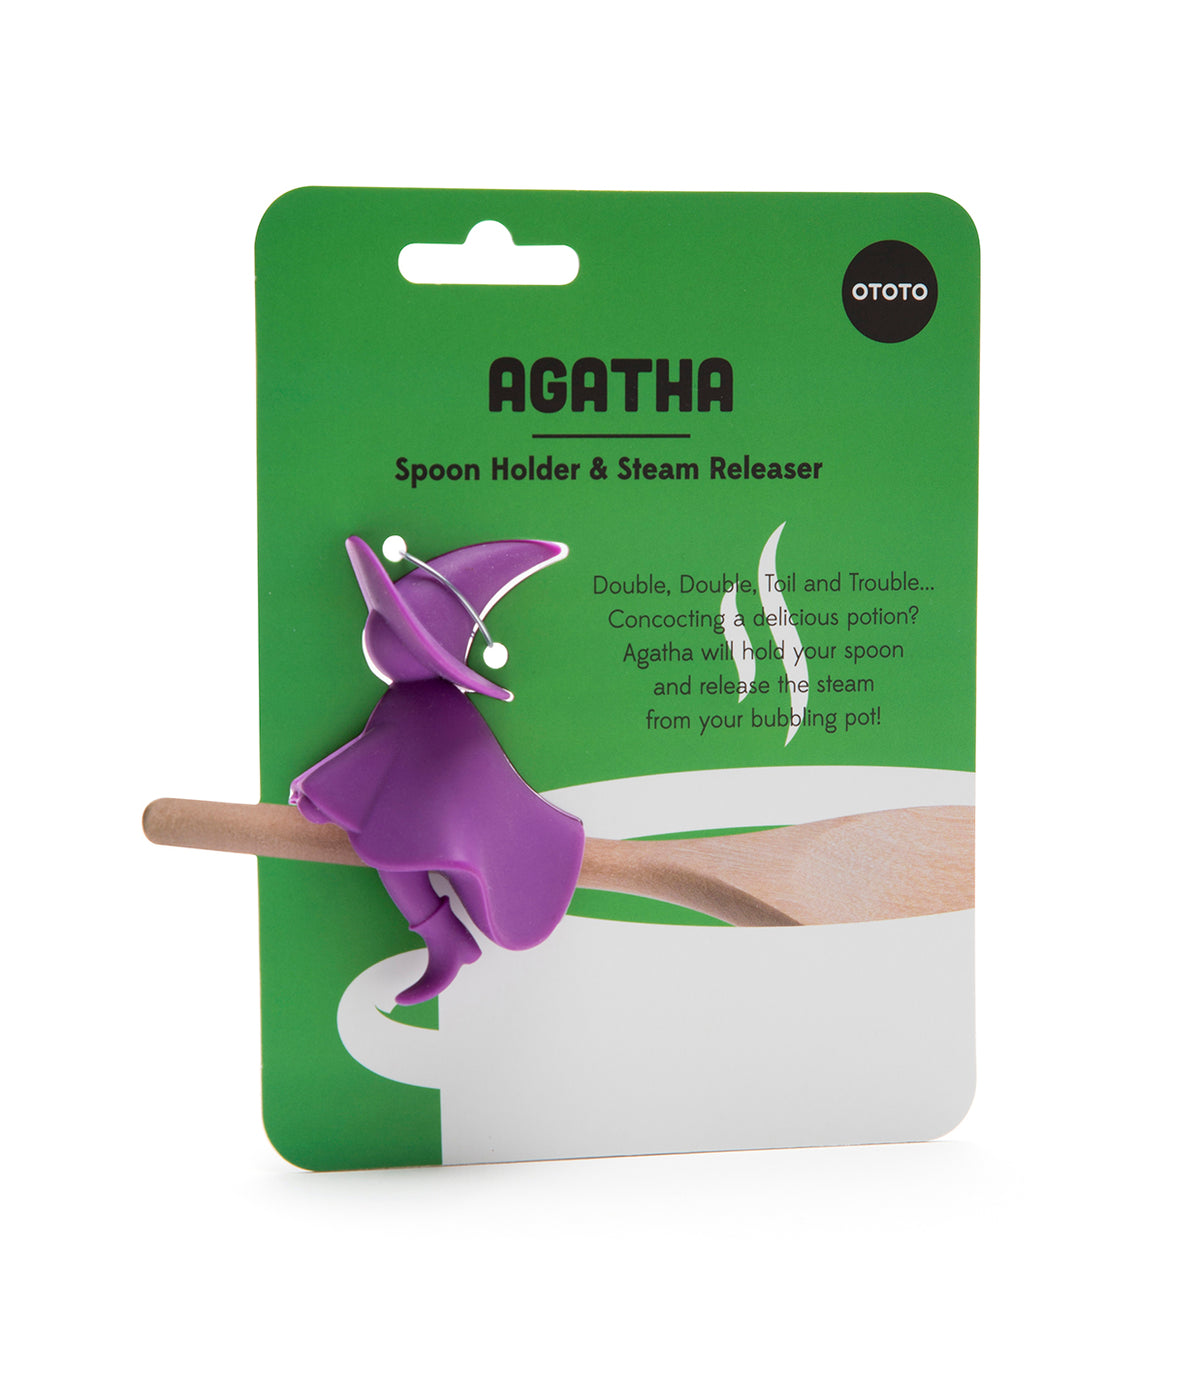 Agatha - Spoon Holder & Steam Releaser - OTOTO